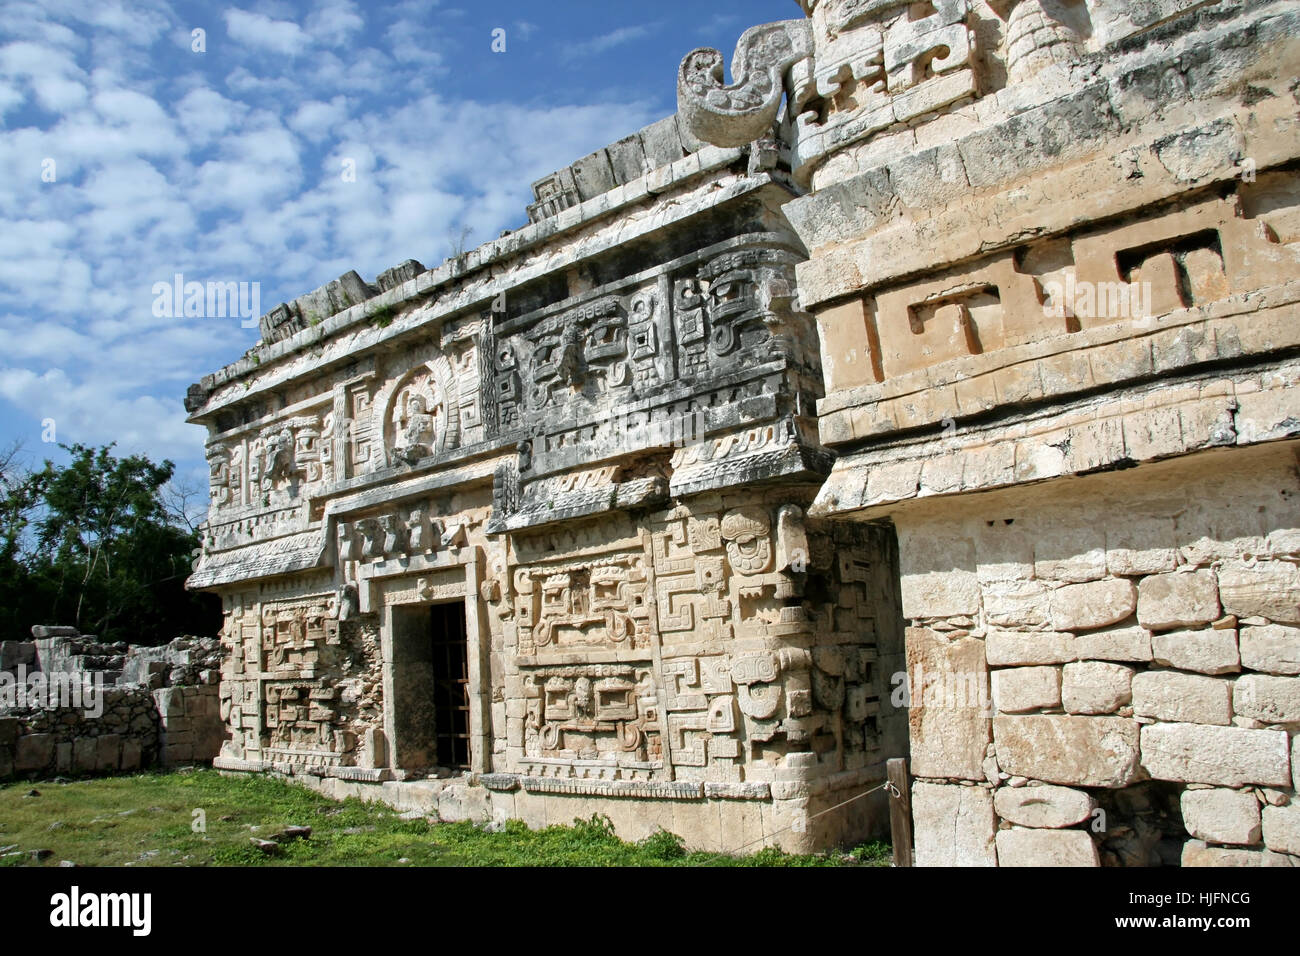 La rovina, il patrimonio culturale mondiale, archeologia, Messico maya, Chichen Itza monjas Foto Stock